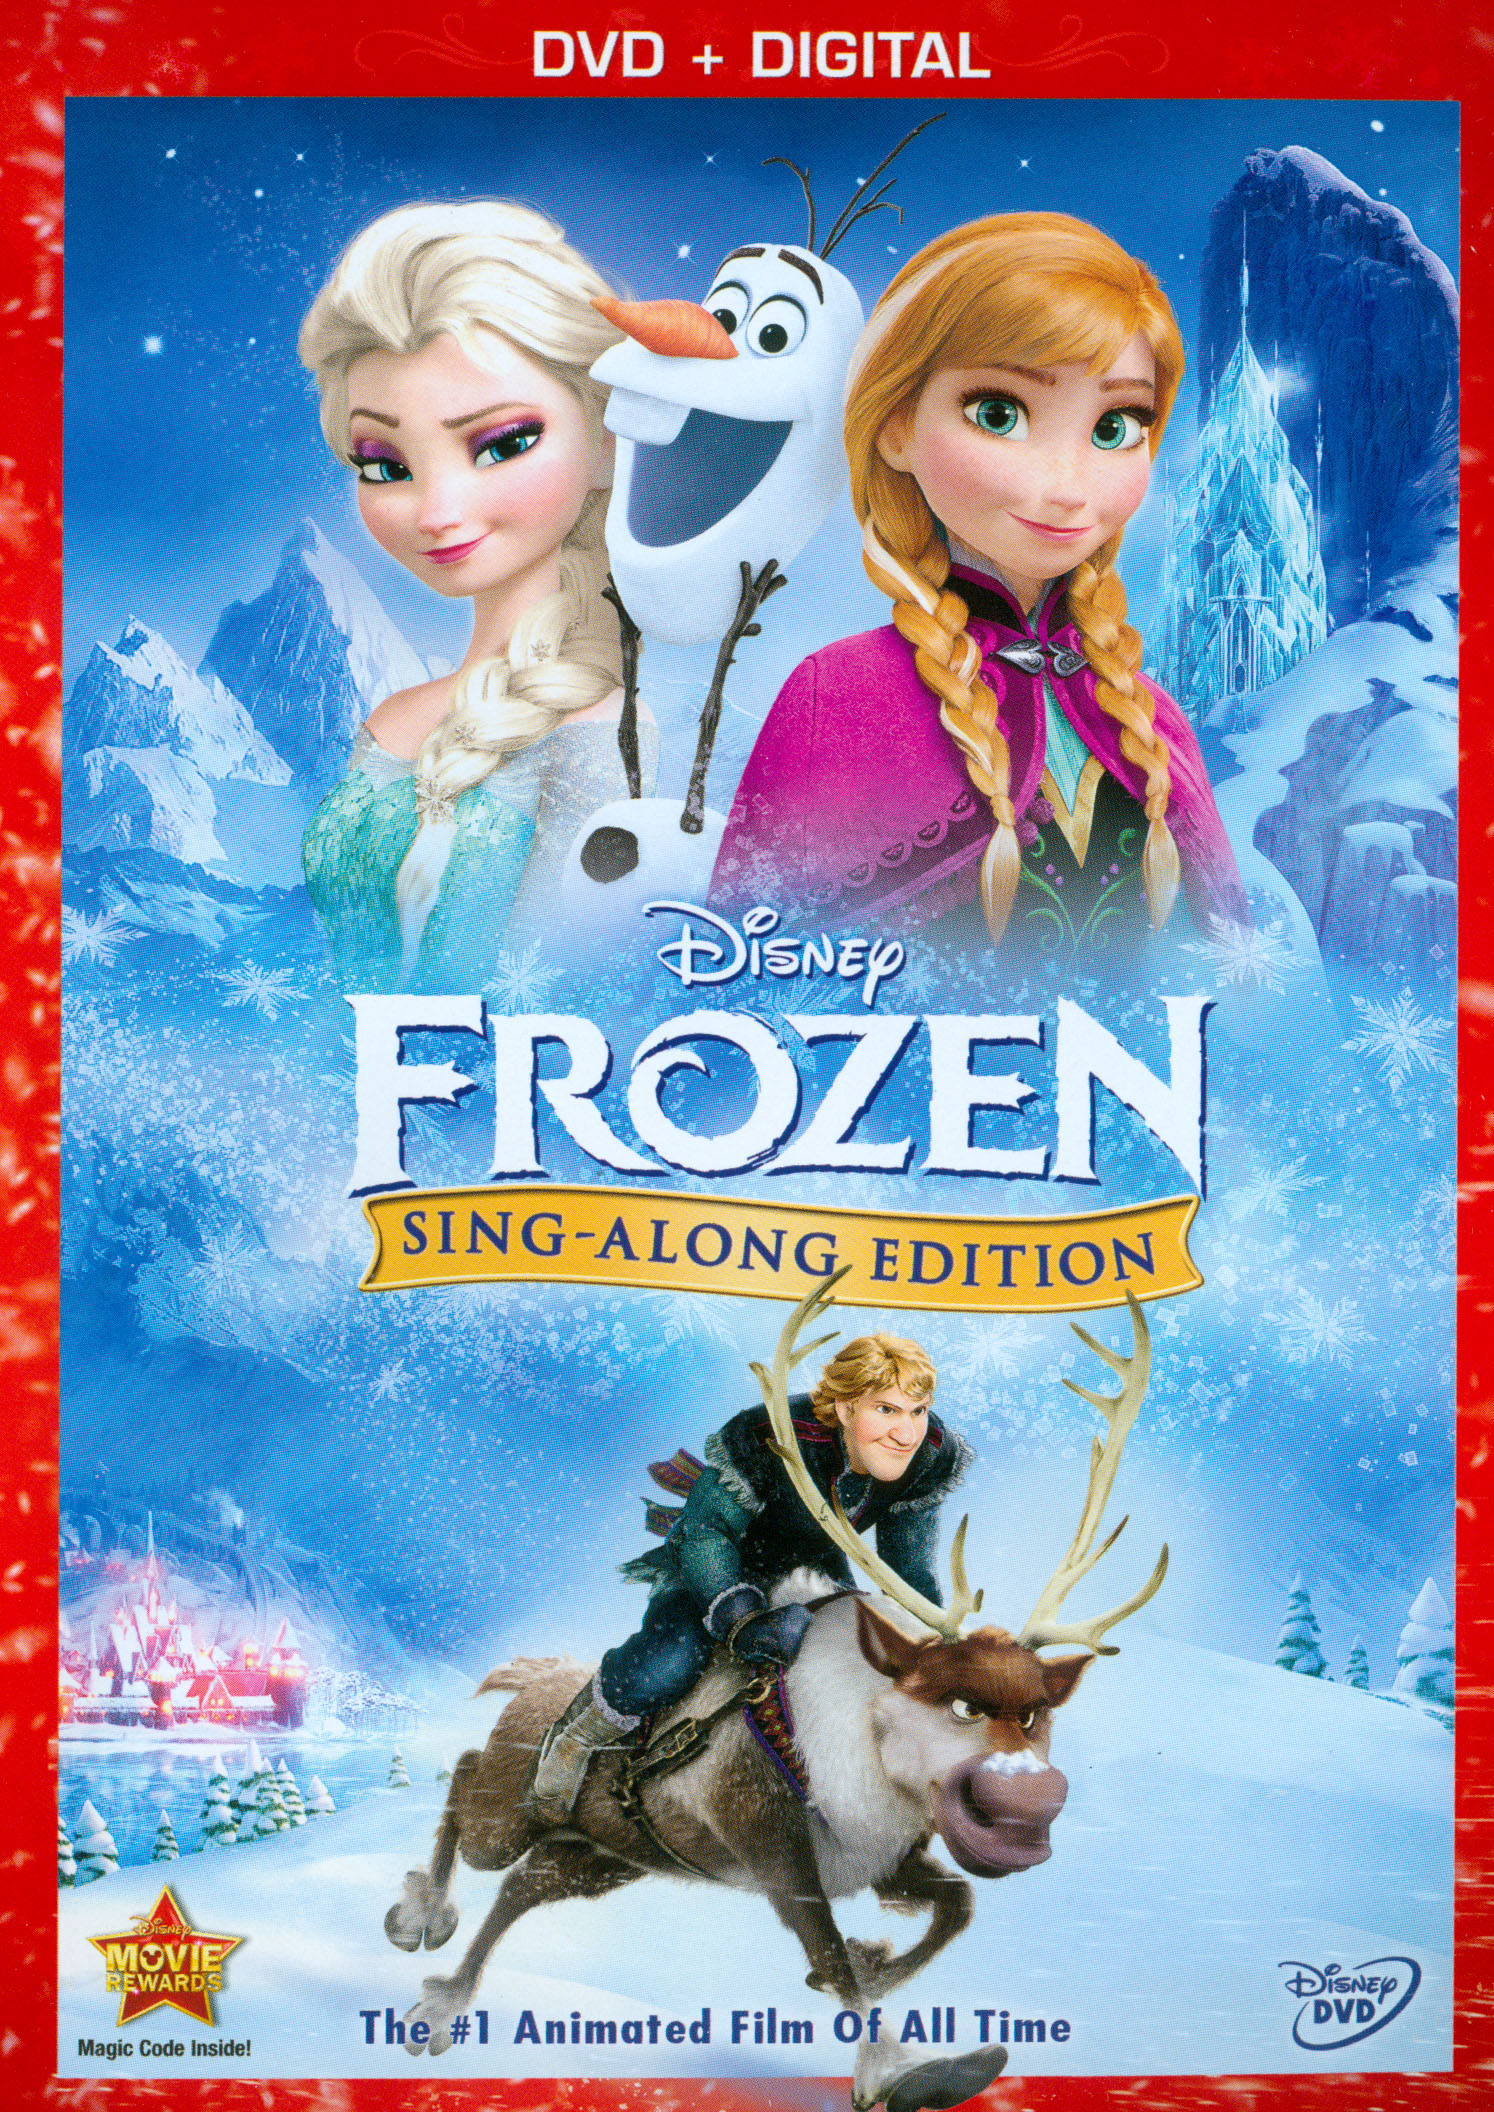 Frozen [Sing-Along Edition] Digital Copy] [DVD] [2013] - Best Buy